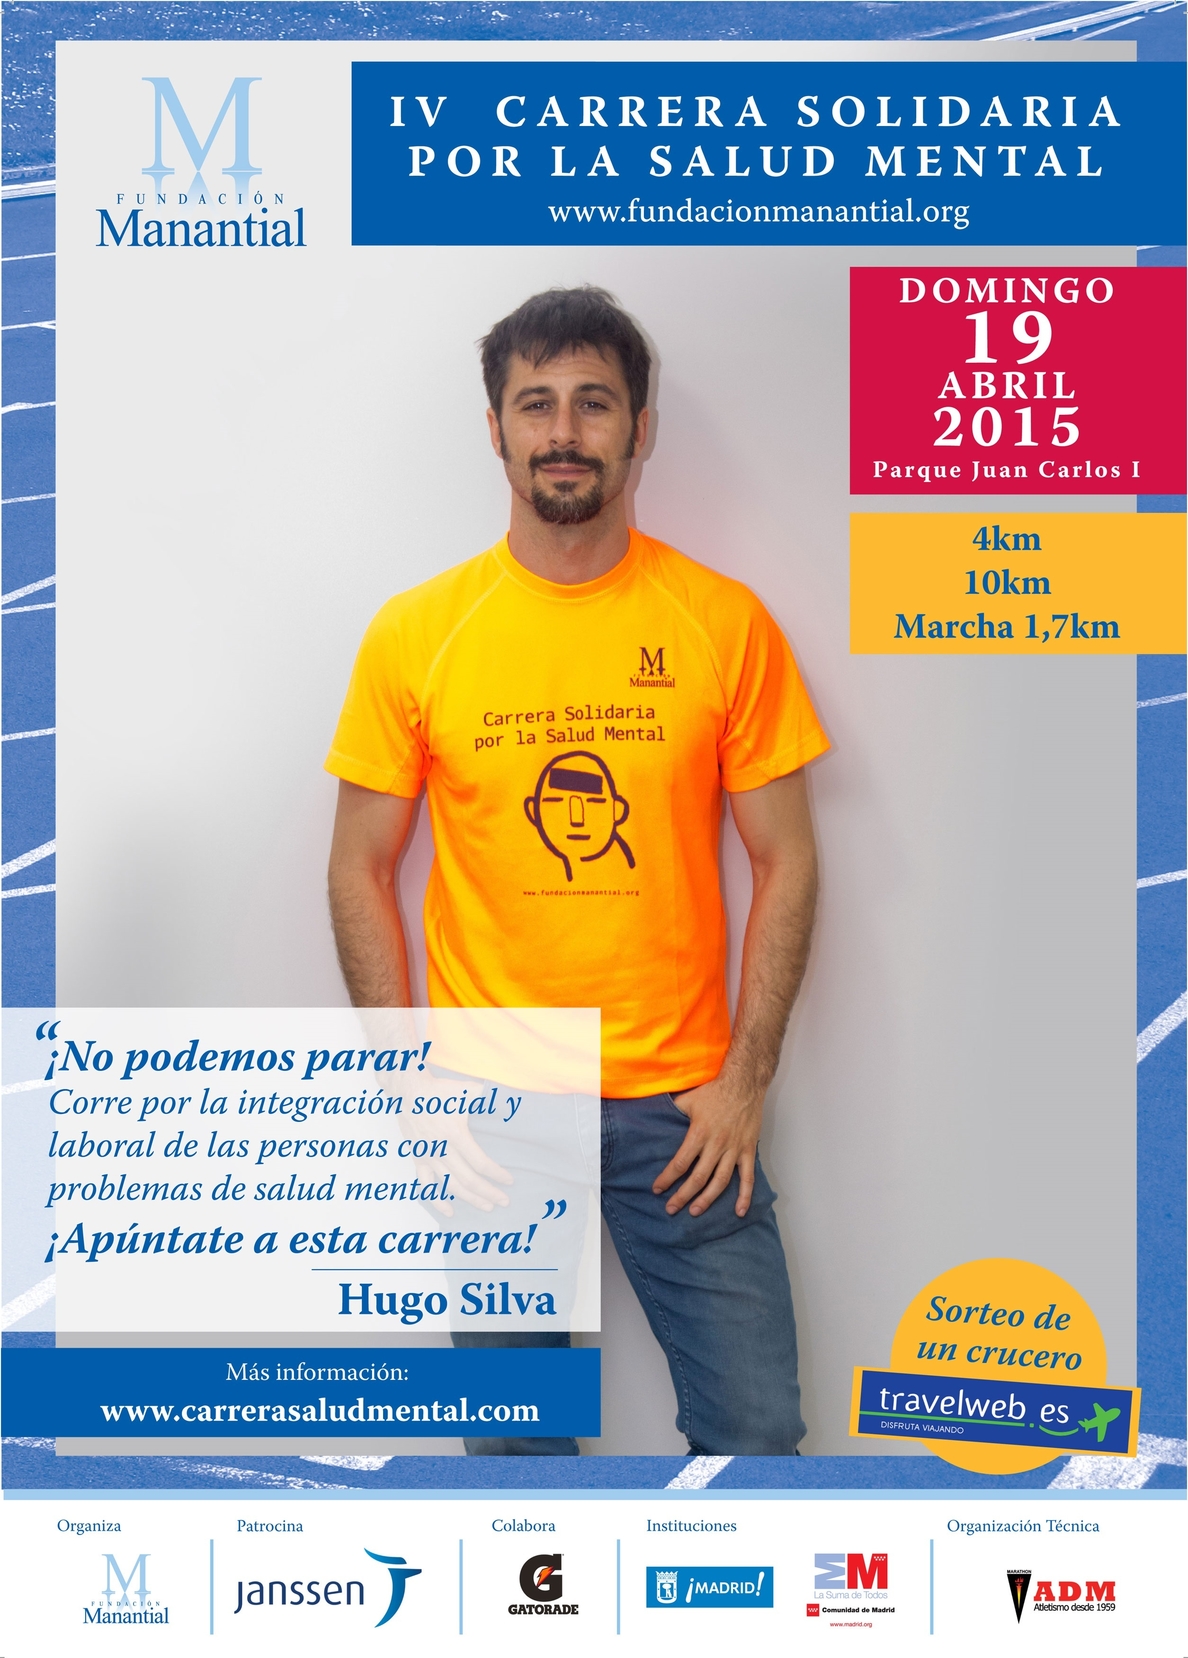 El actor Hugo Silva, imagen de la IV Carrera Solidaria por la Salud Mental de Fundación Manantial